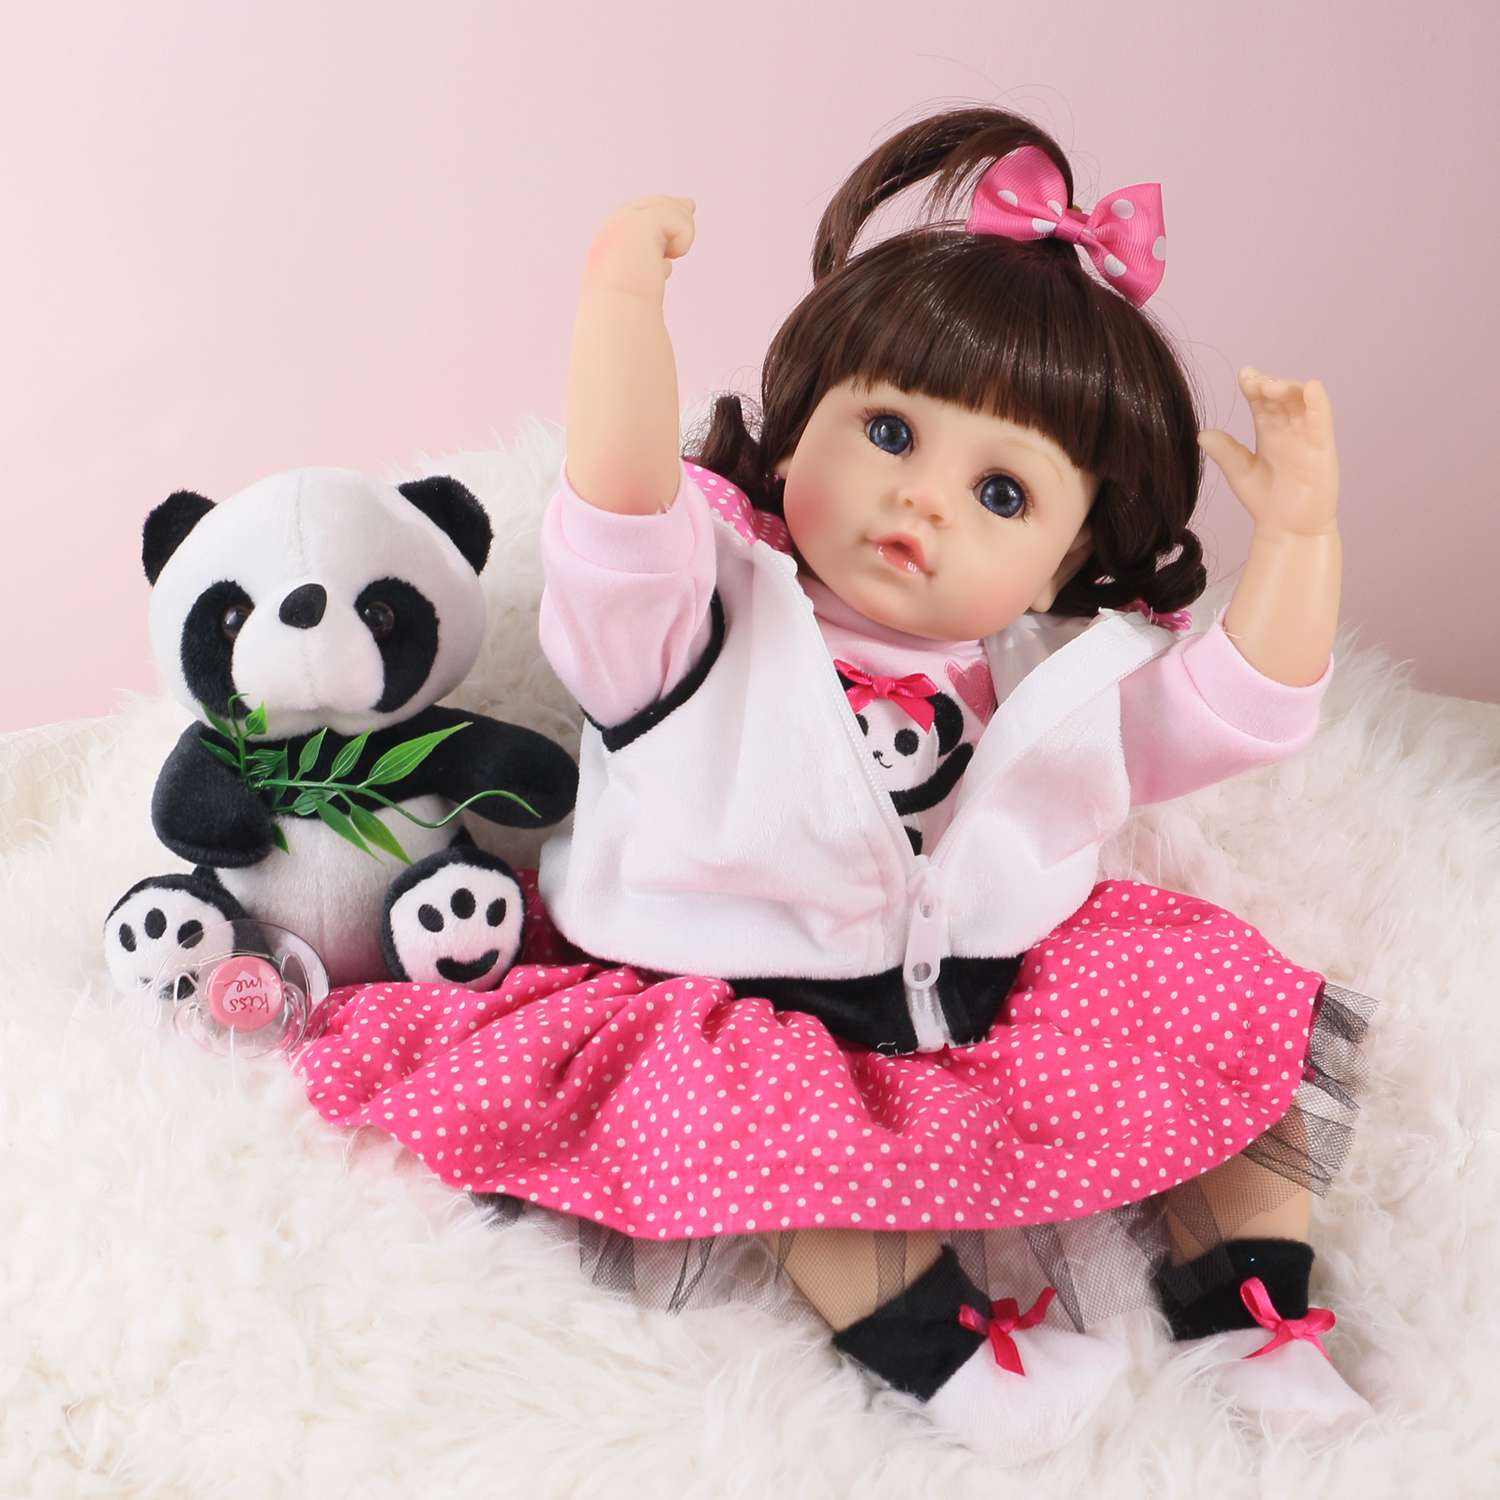 Кукла Реборн QA BABY Алина девочка большая пупс набор игрушки для девочки 42 см 45003 - фото 8